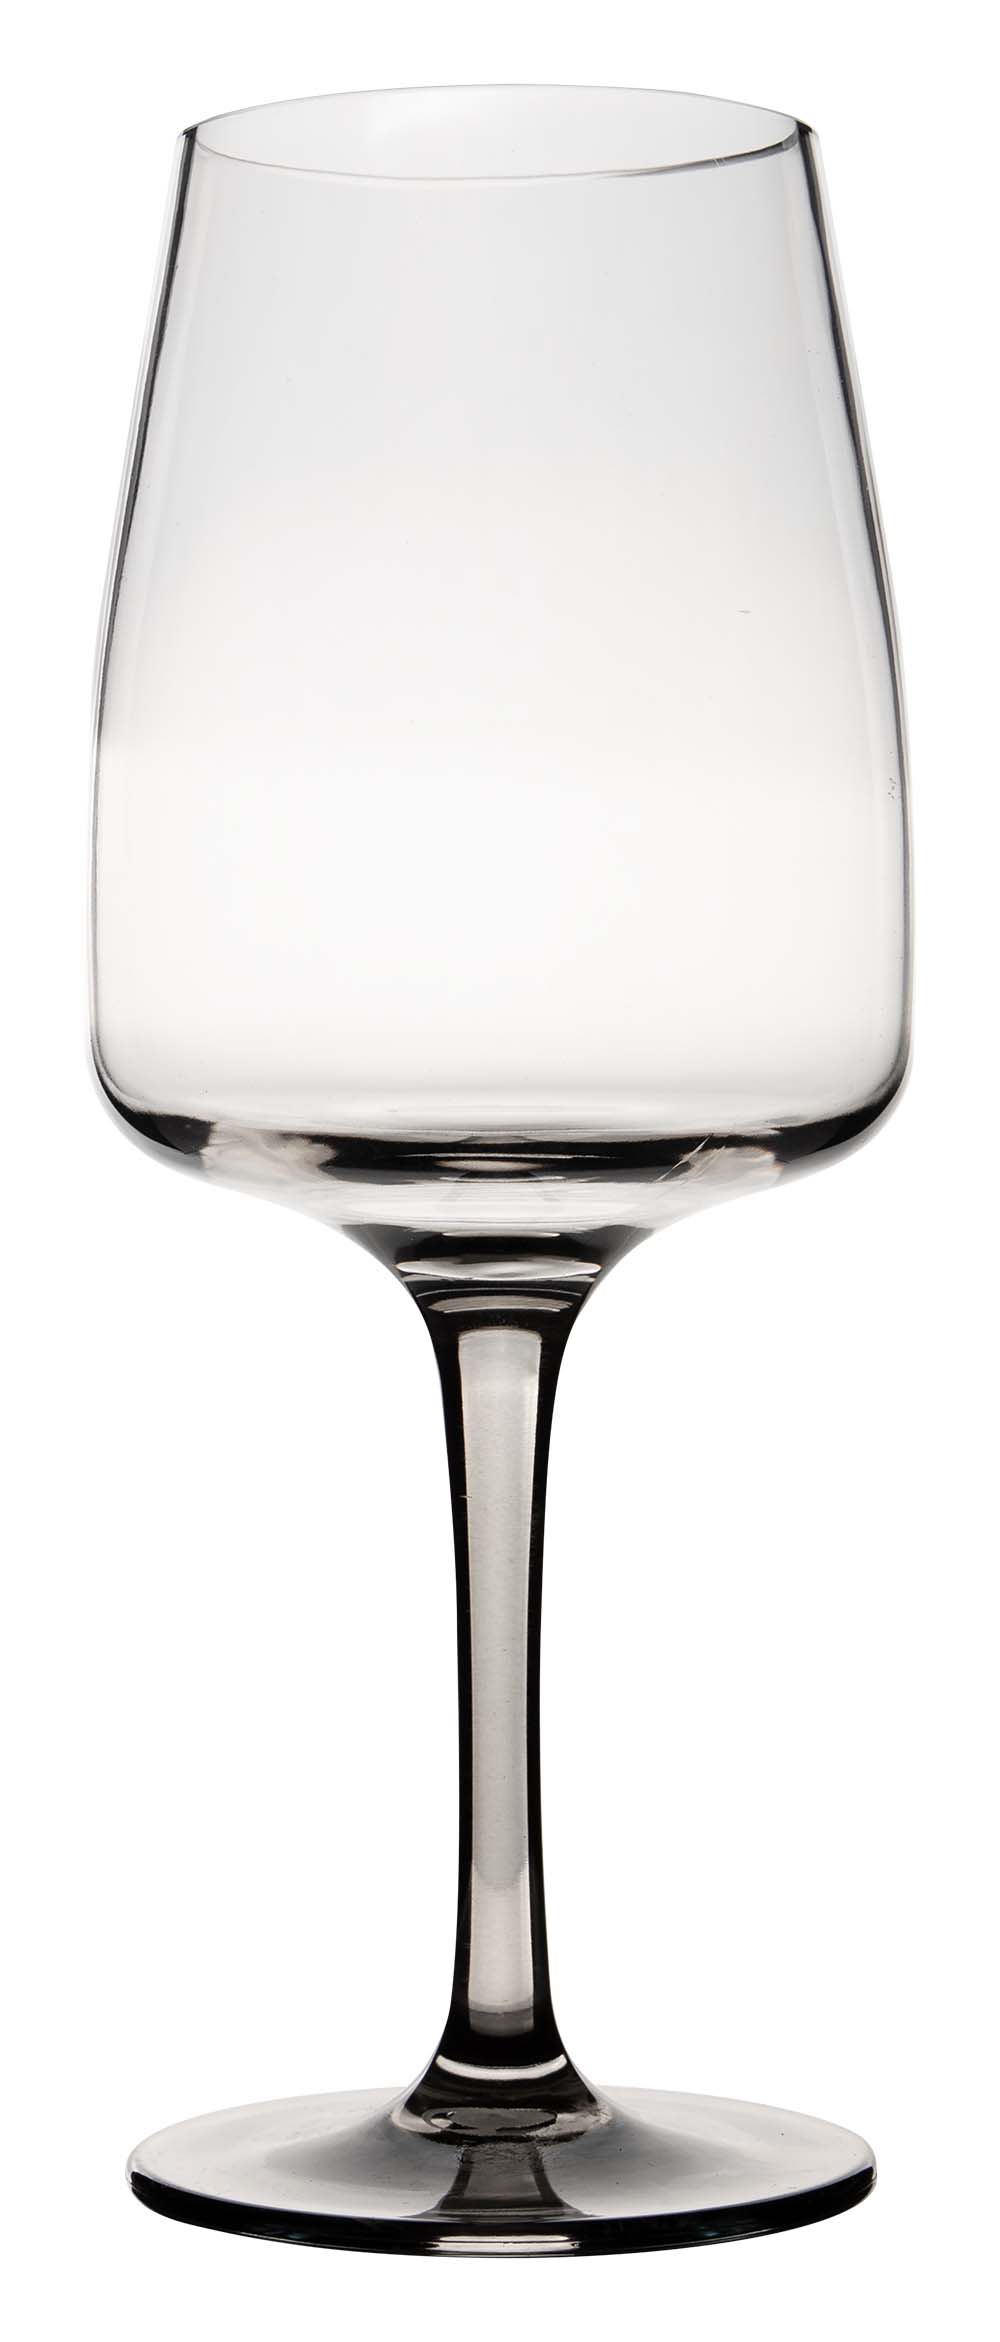 6912181 Een stijlvol wijnglas uit de Vivid line collectie. Door het smoke effect heeft het wijnglas een moderne uitstraling. Vrijwel onbreekbaar door hoogwaardig MS materiaal. Bestaat uit een set van 2 stuks. Zeer gemakkelijk te reinigen en langdurig te gebruiken, wat het glas erg duurzaam maakt. Daarnaast is het wijnglas erg lichtgewicht, krasbestendig en BPA vrij. Inhoud: 470 ml.